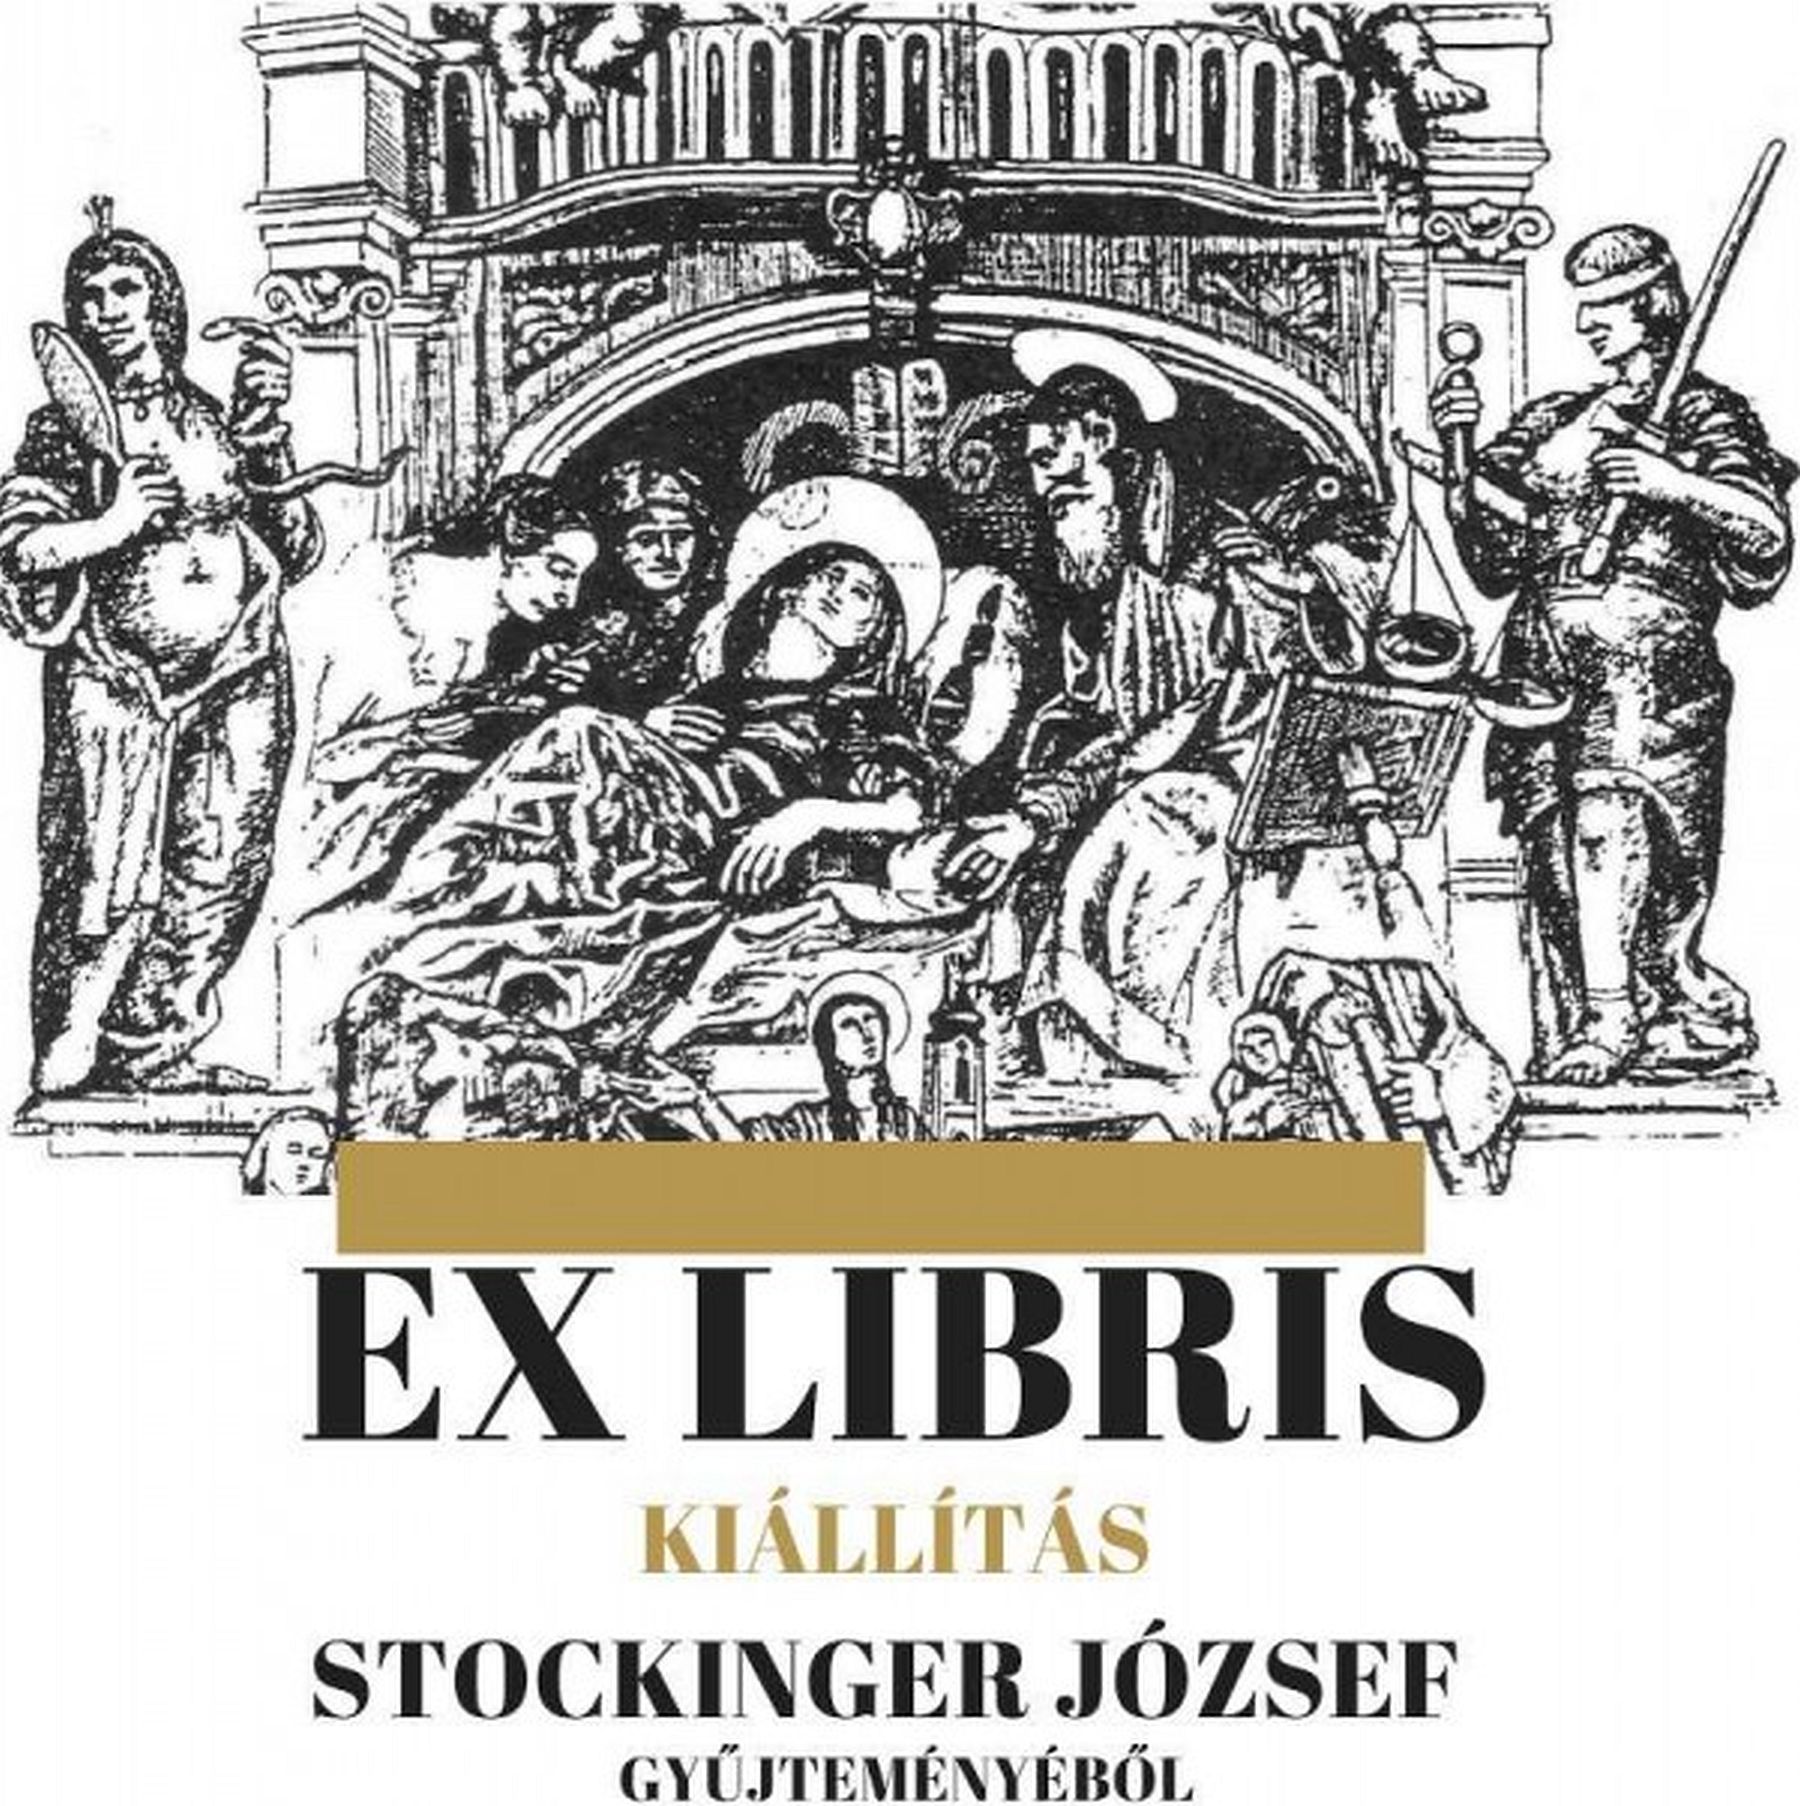 Ex libris - kiállítás nyílik Stockinger József gyűjteményéből